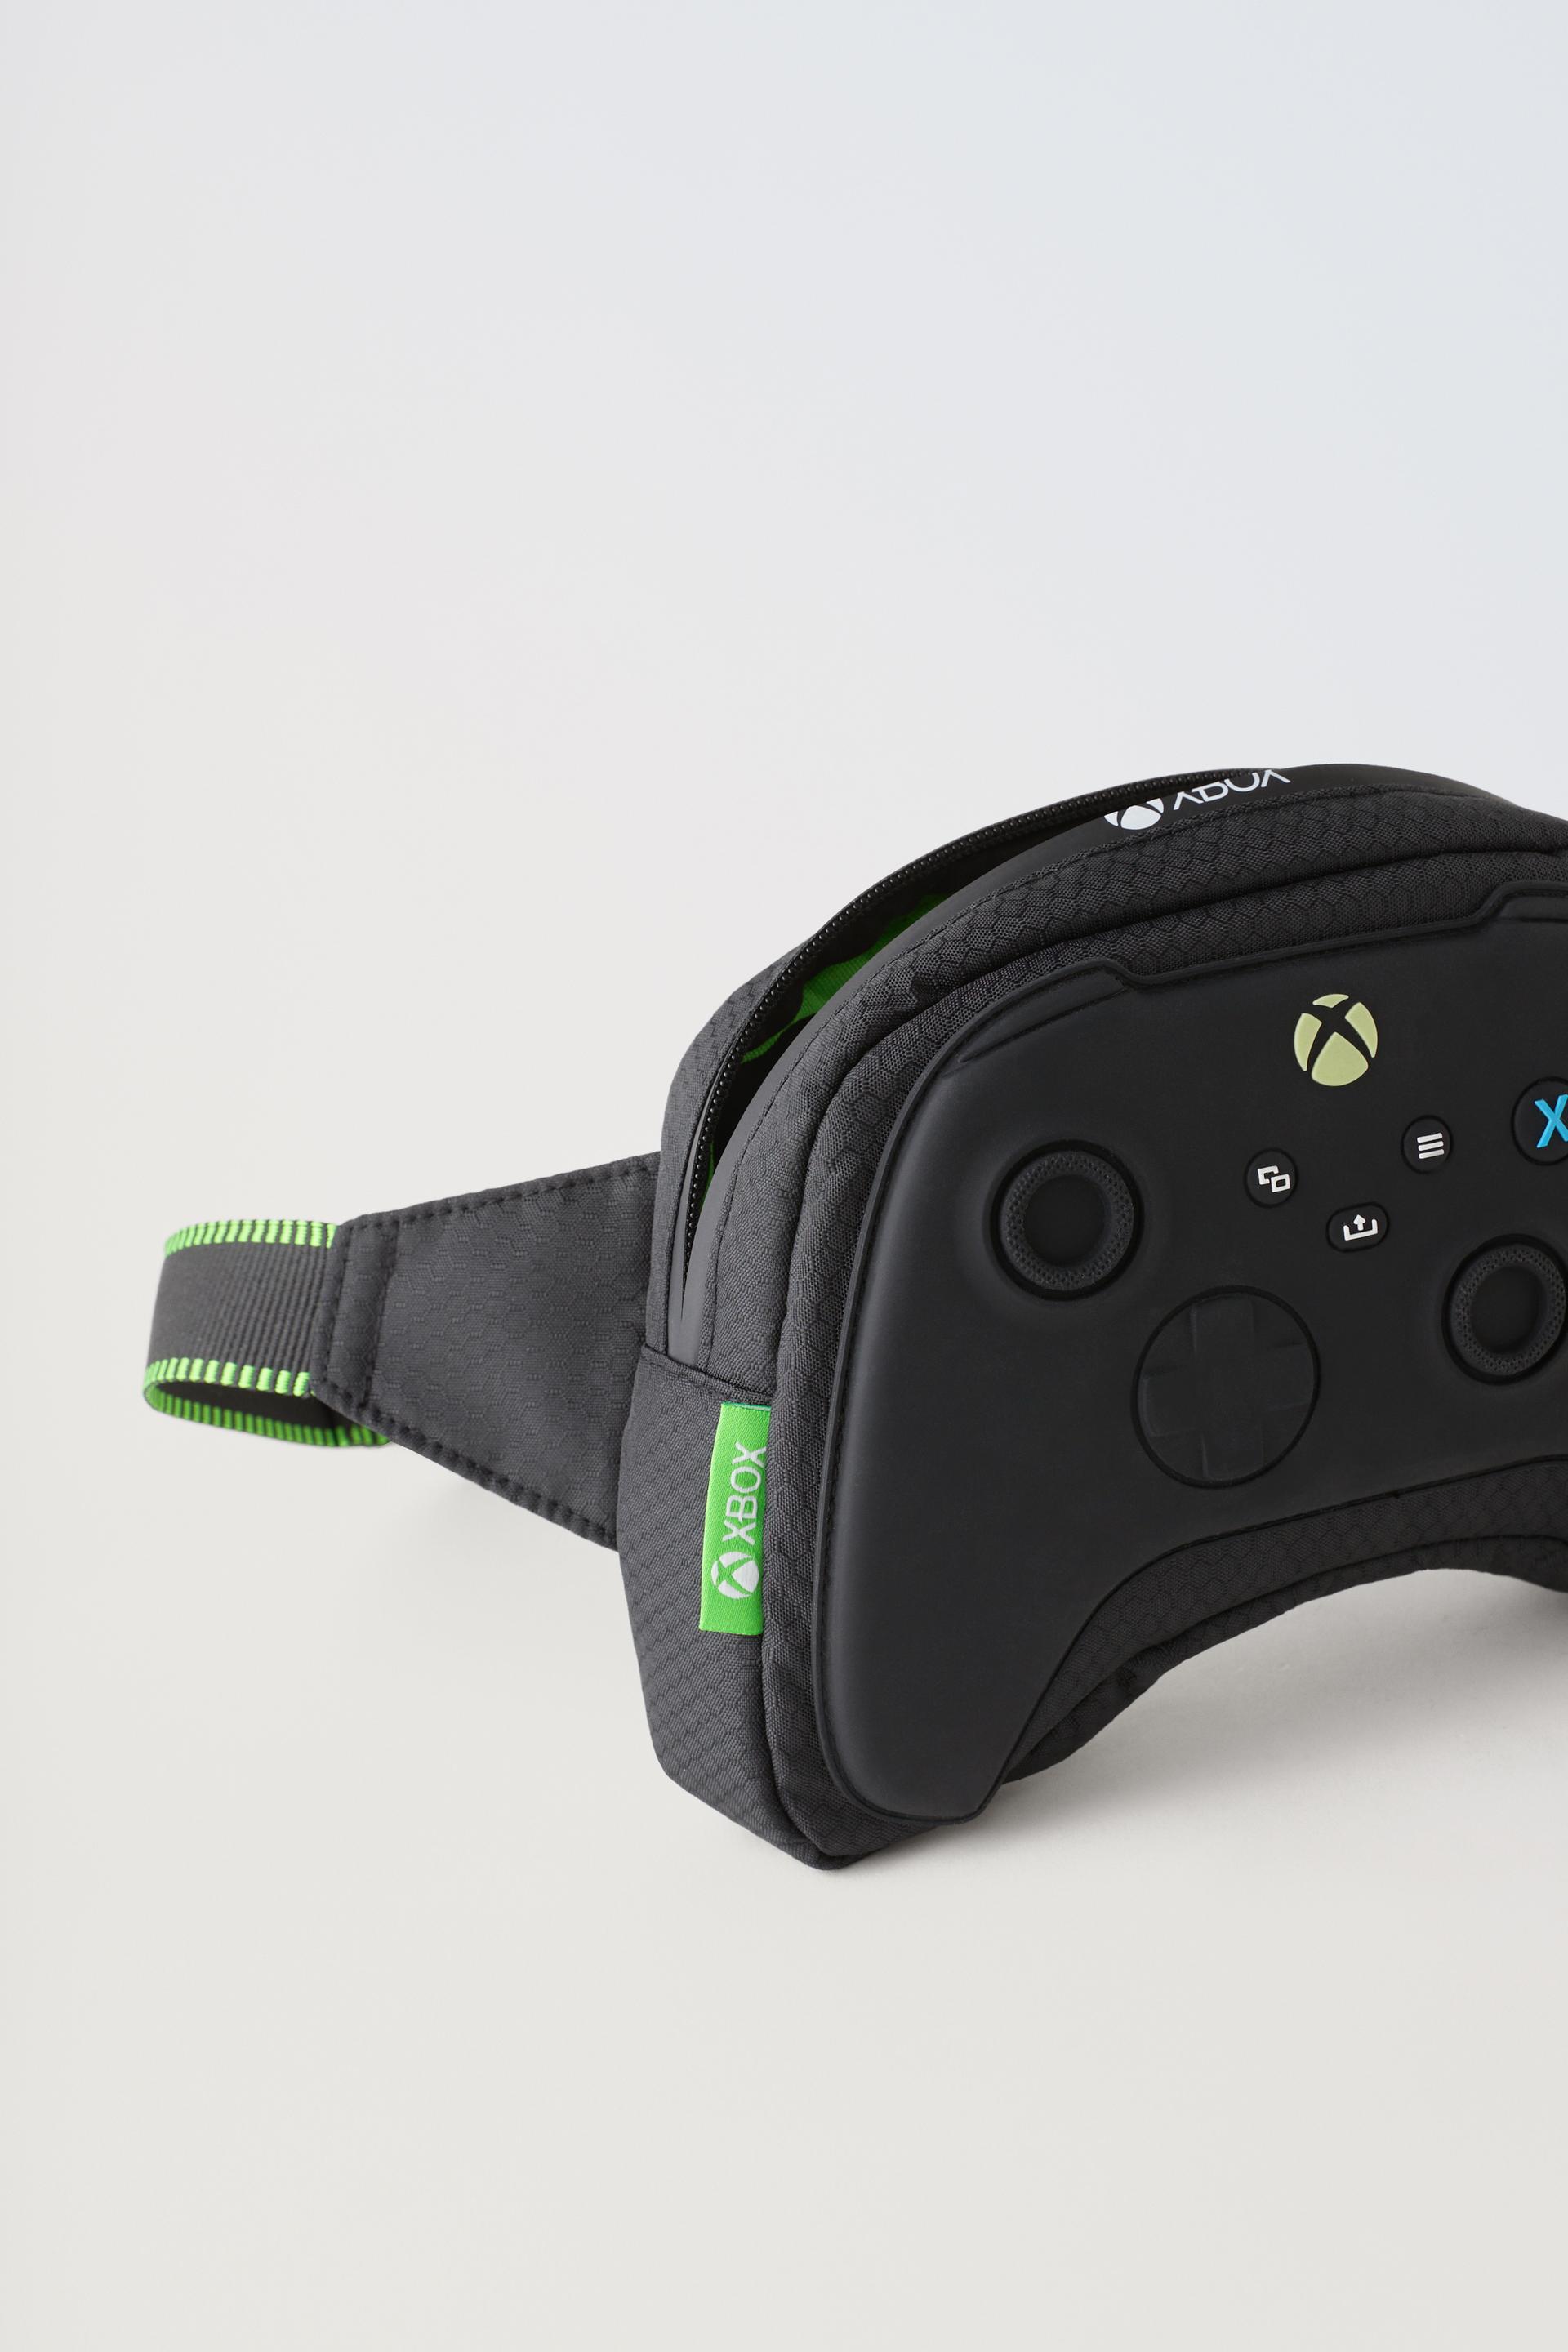 Xbox Essentials Black Joggers – Xbox Gear Shop